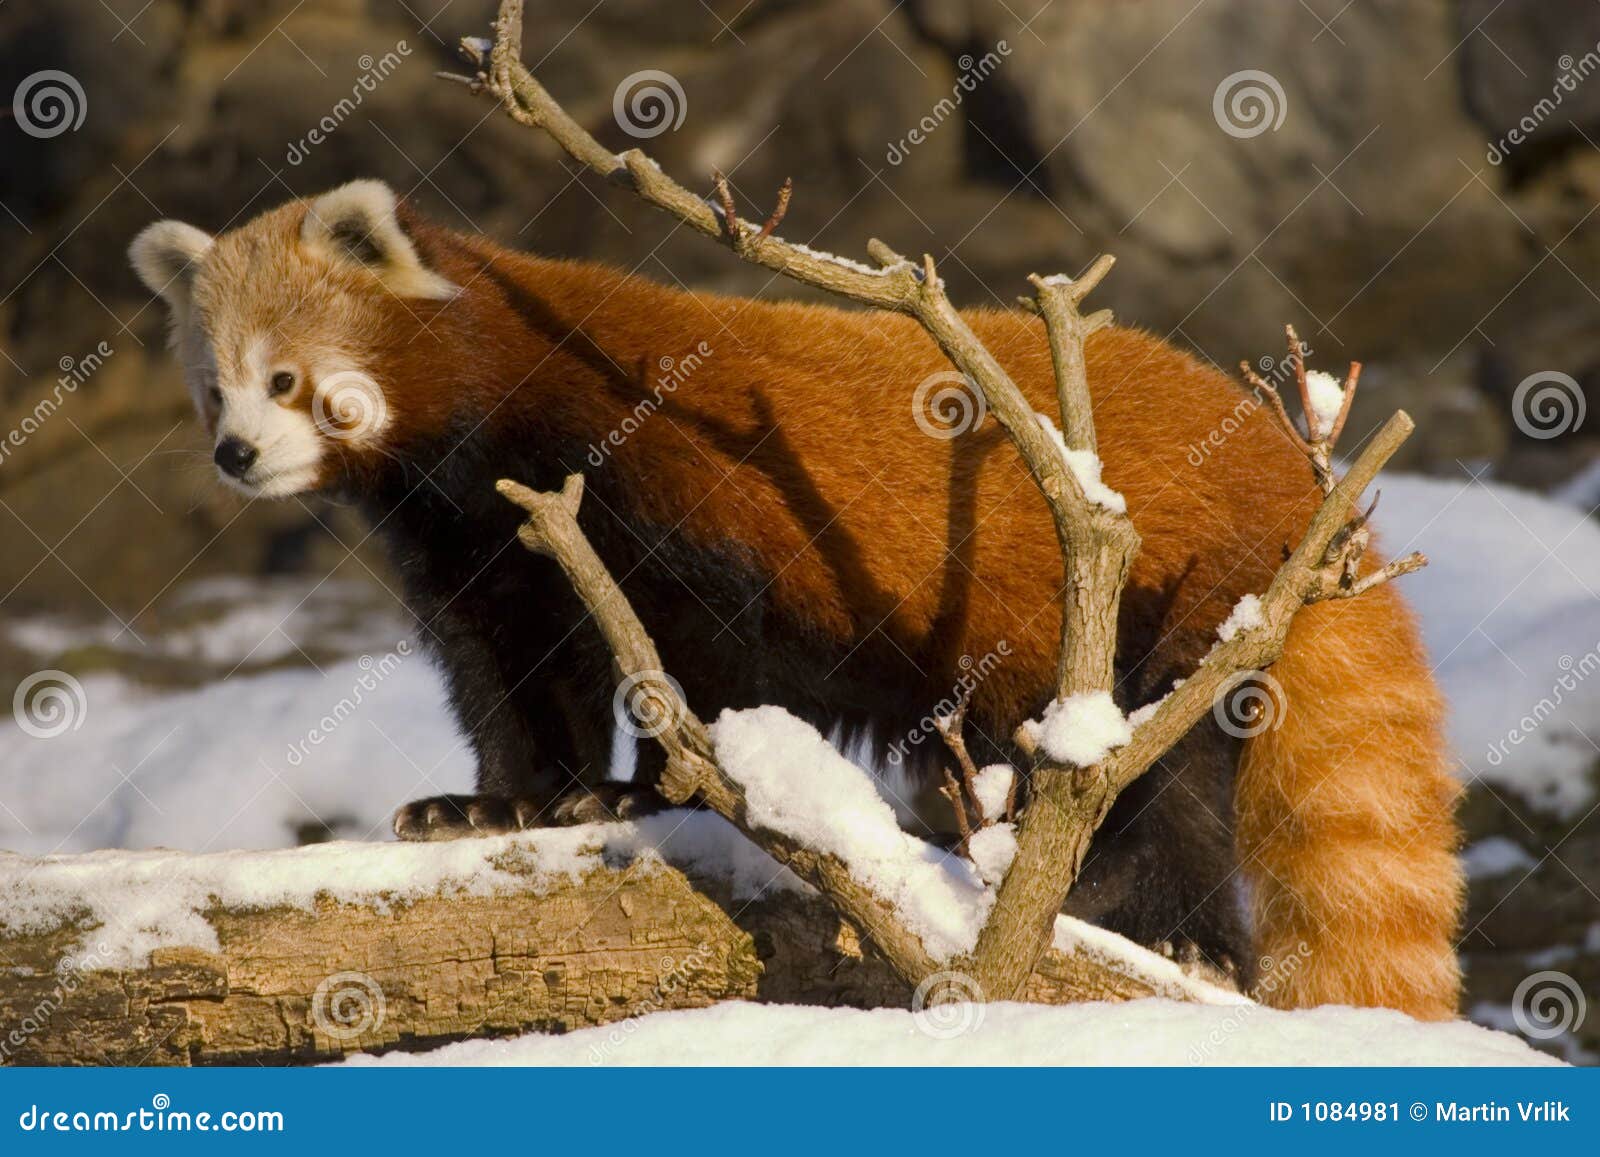 red panda (ailurus fulgens)